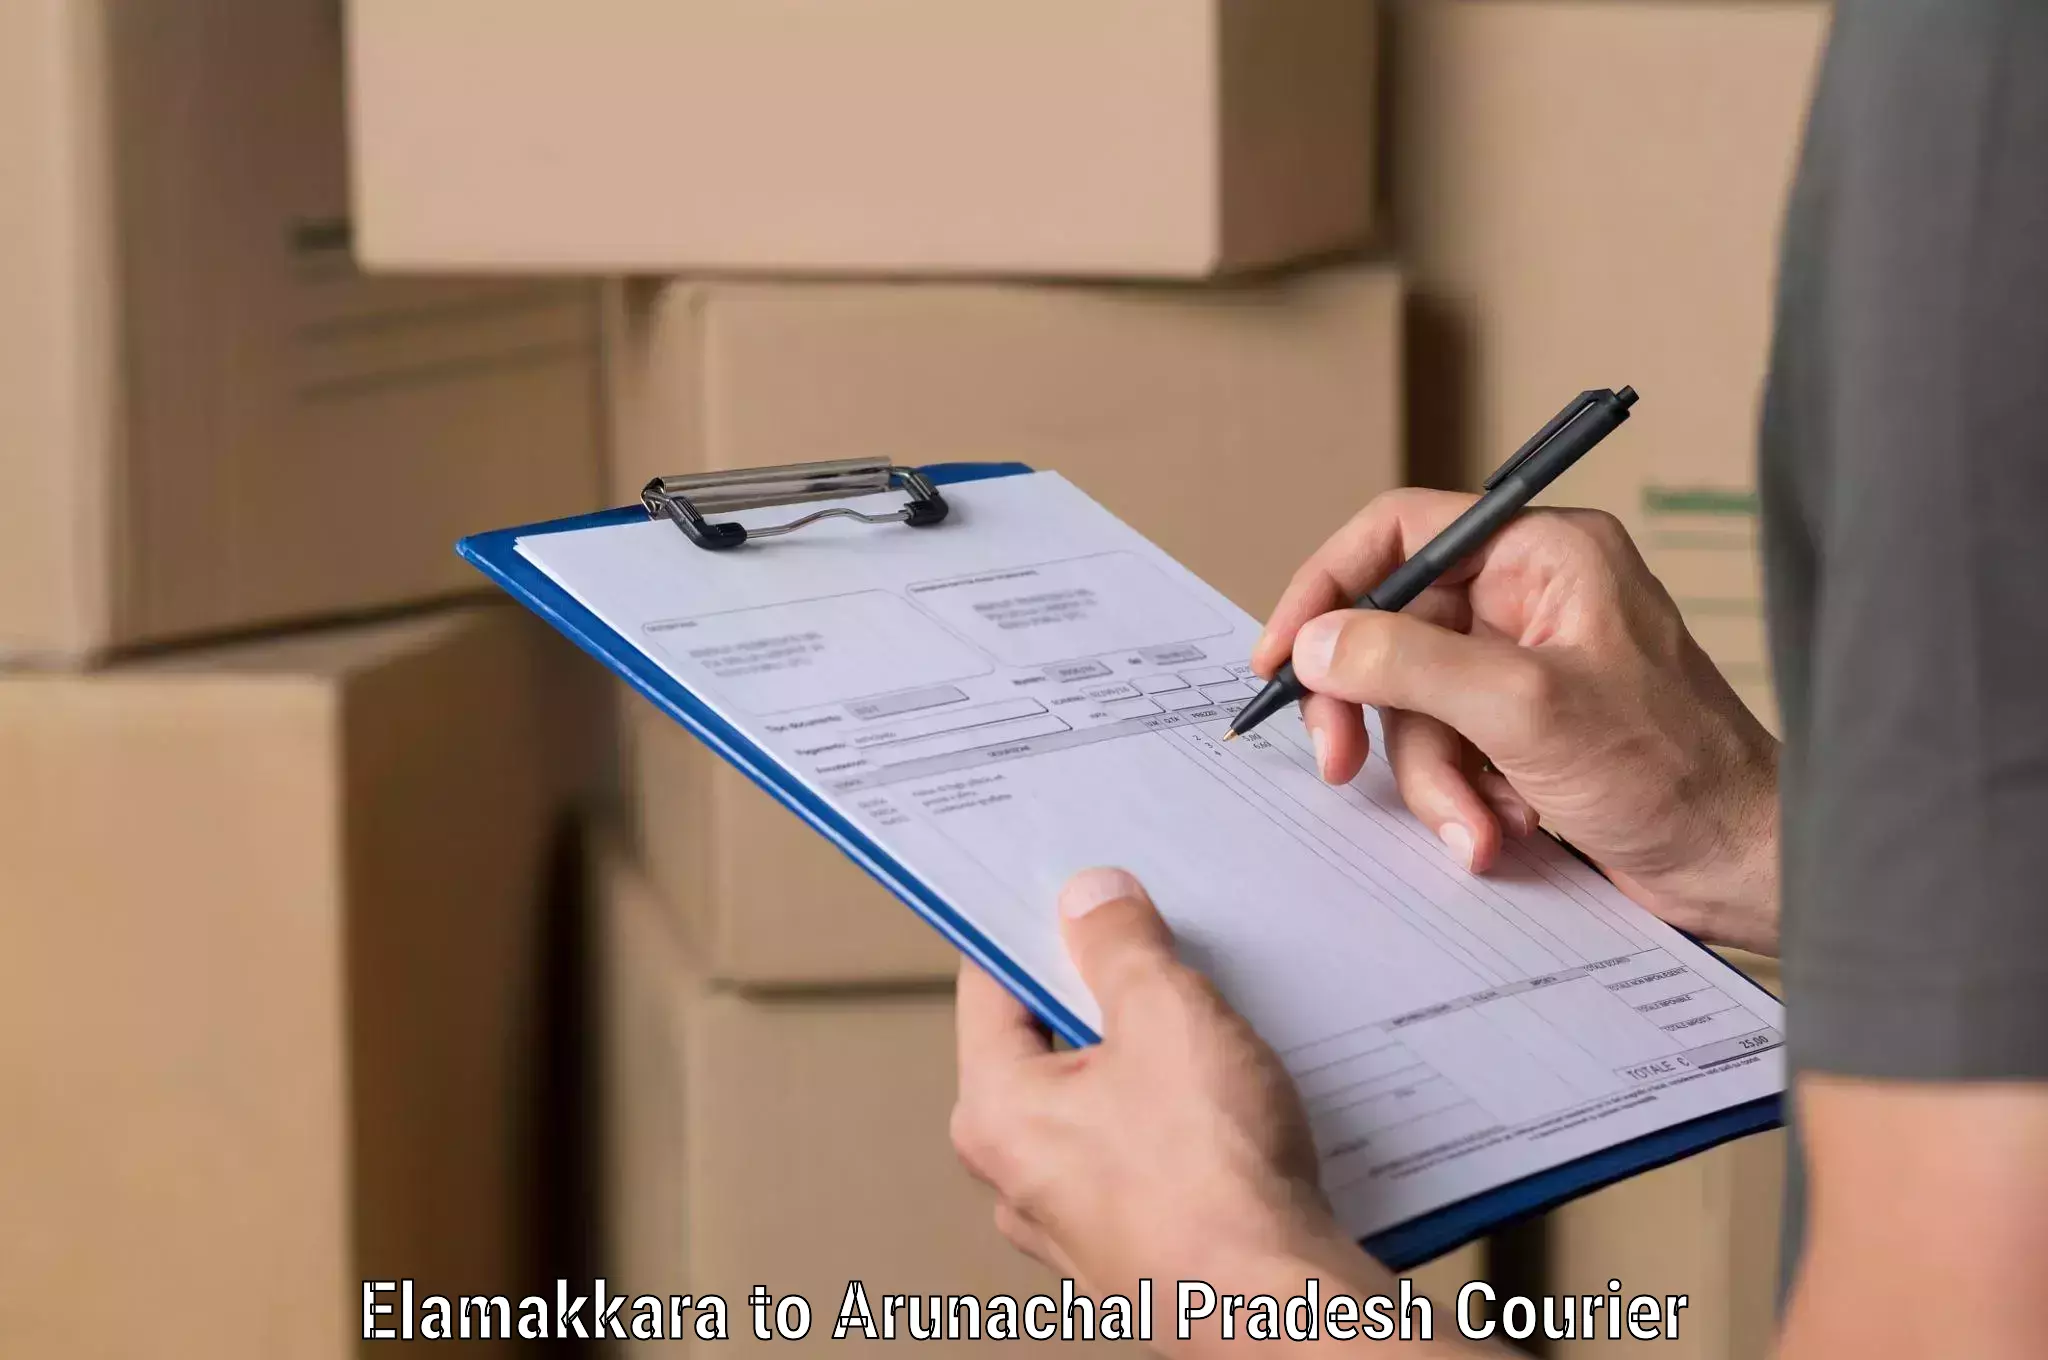 Comprehensive logistics in Elamakkara to Pasighat